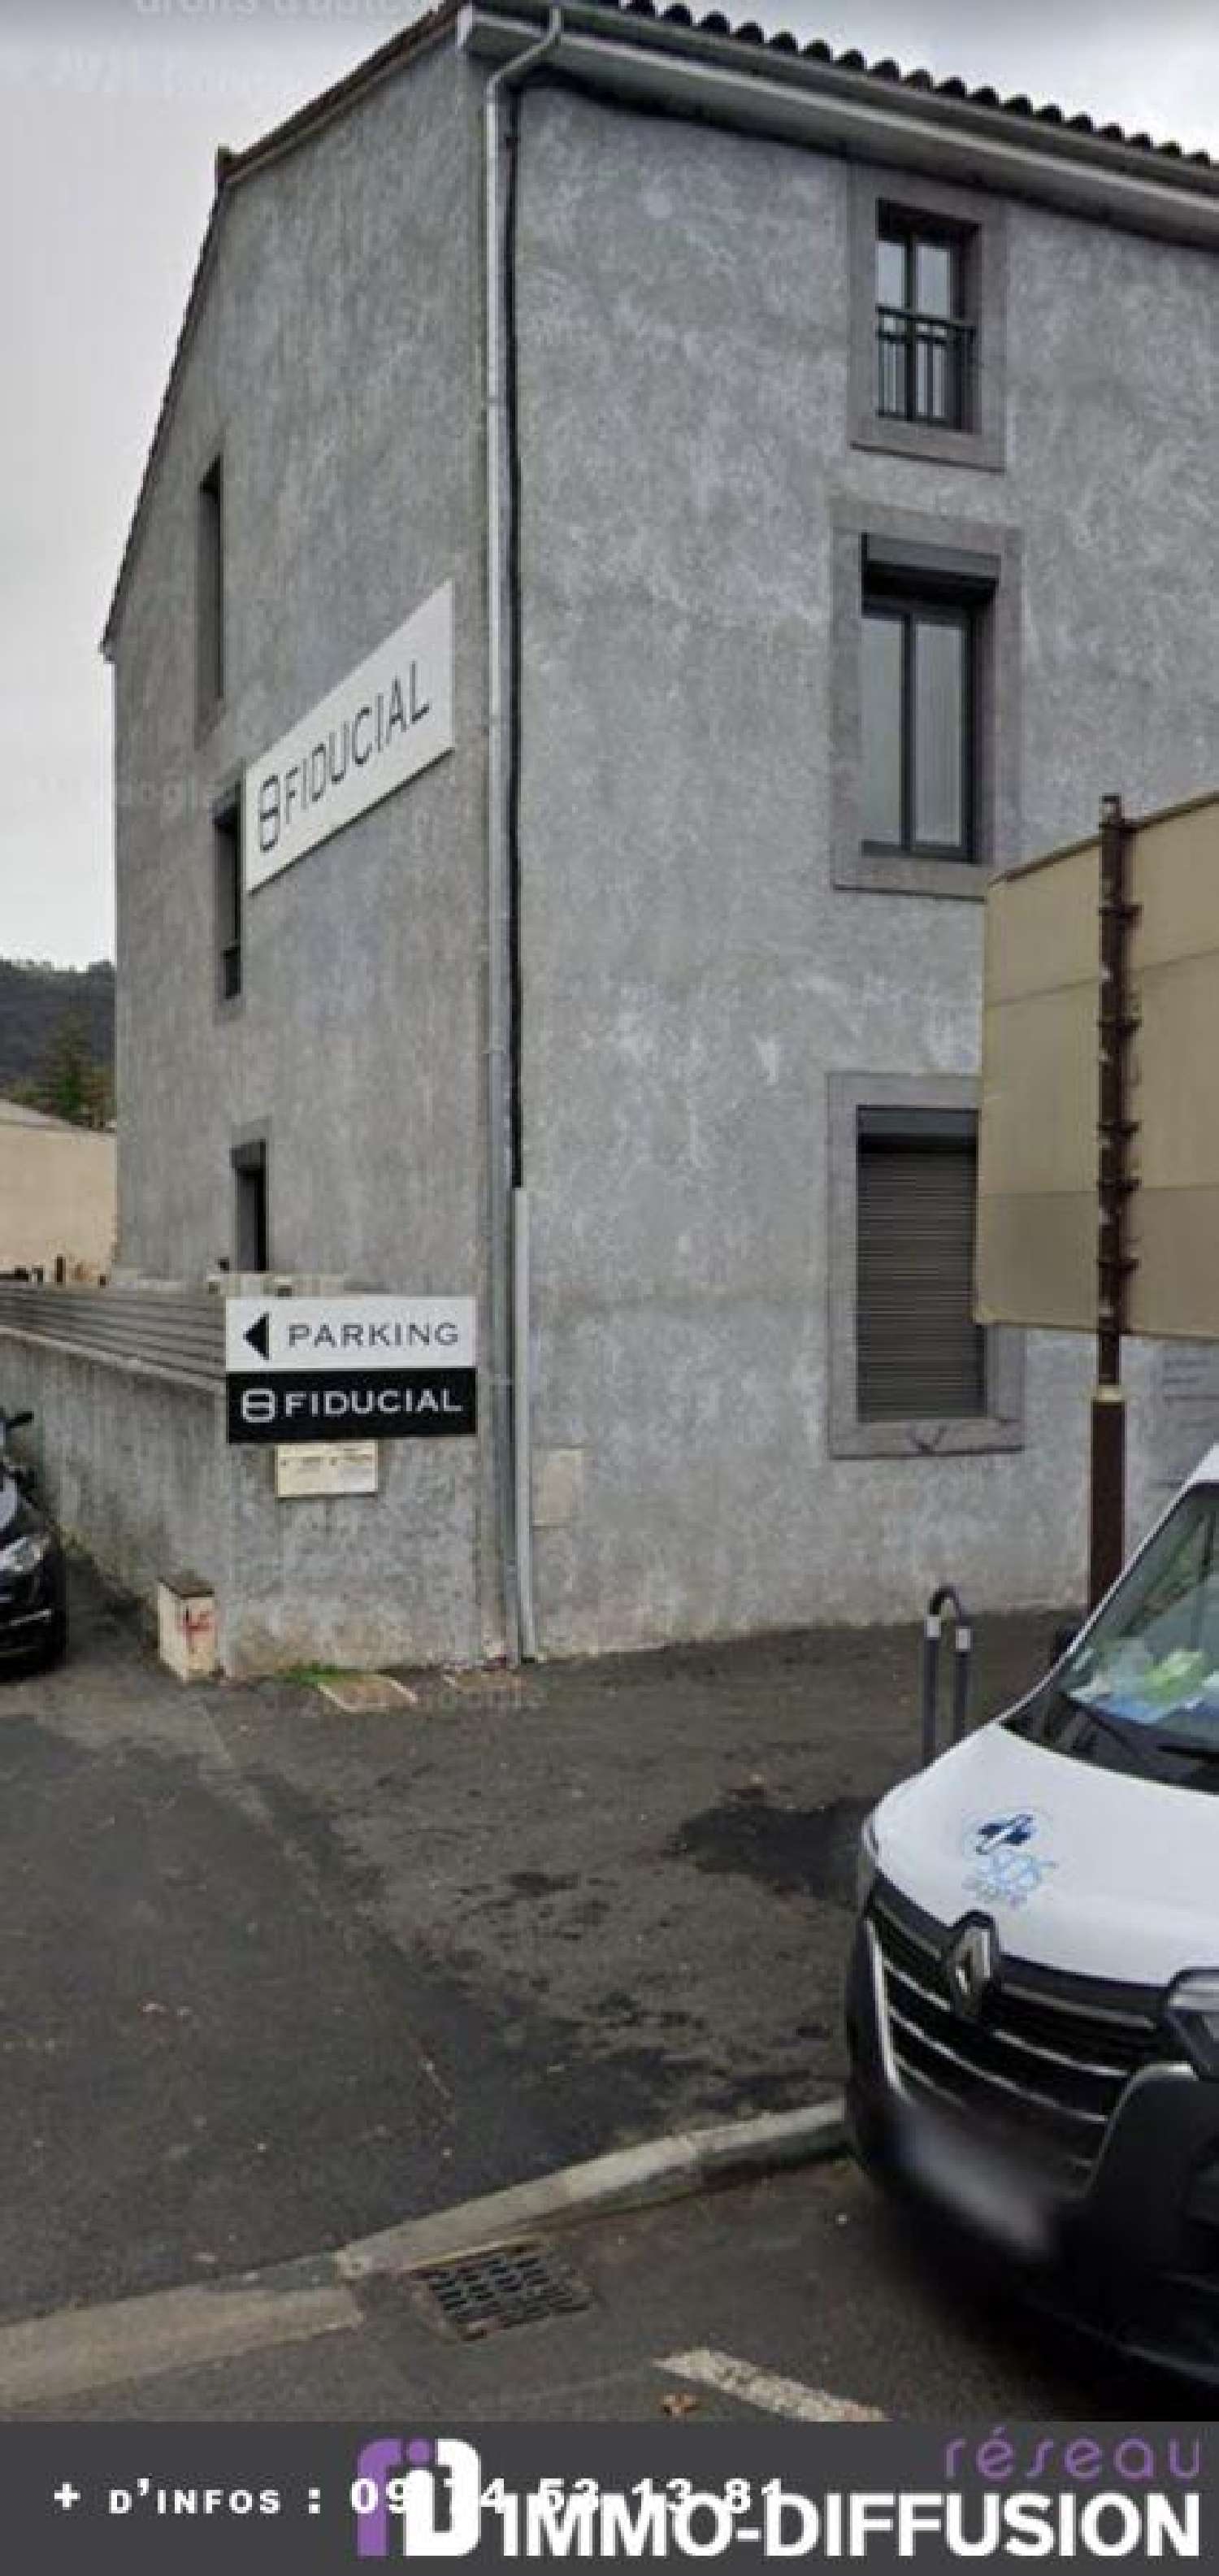  for sale apartment Saint-Affrique Aveyron 2